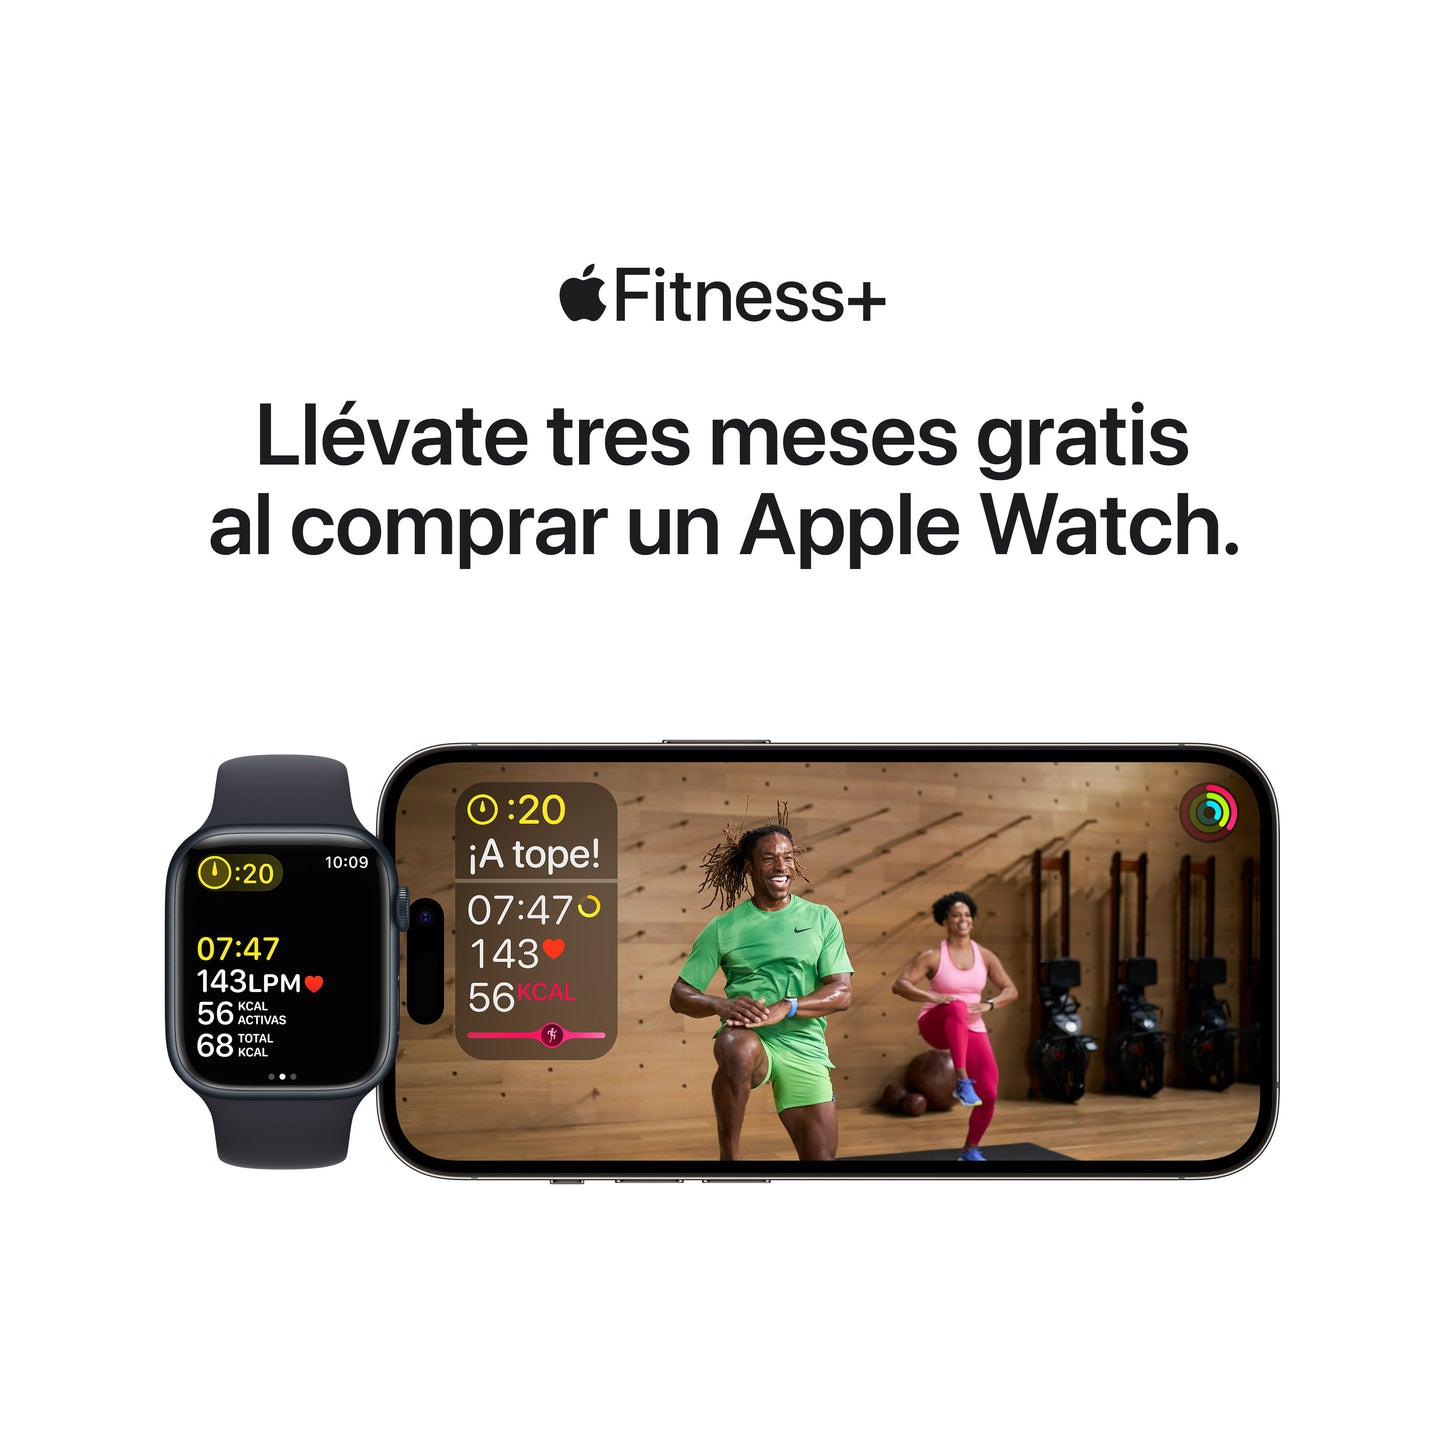 Apple Watch SE (GPS) revisa tus tendencias en la app Fitness en www.mac-center.com